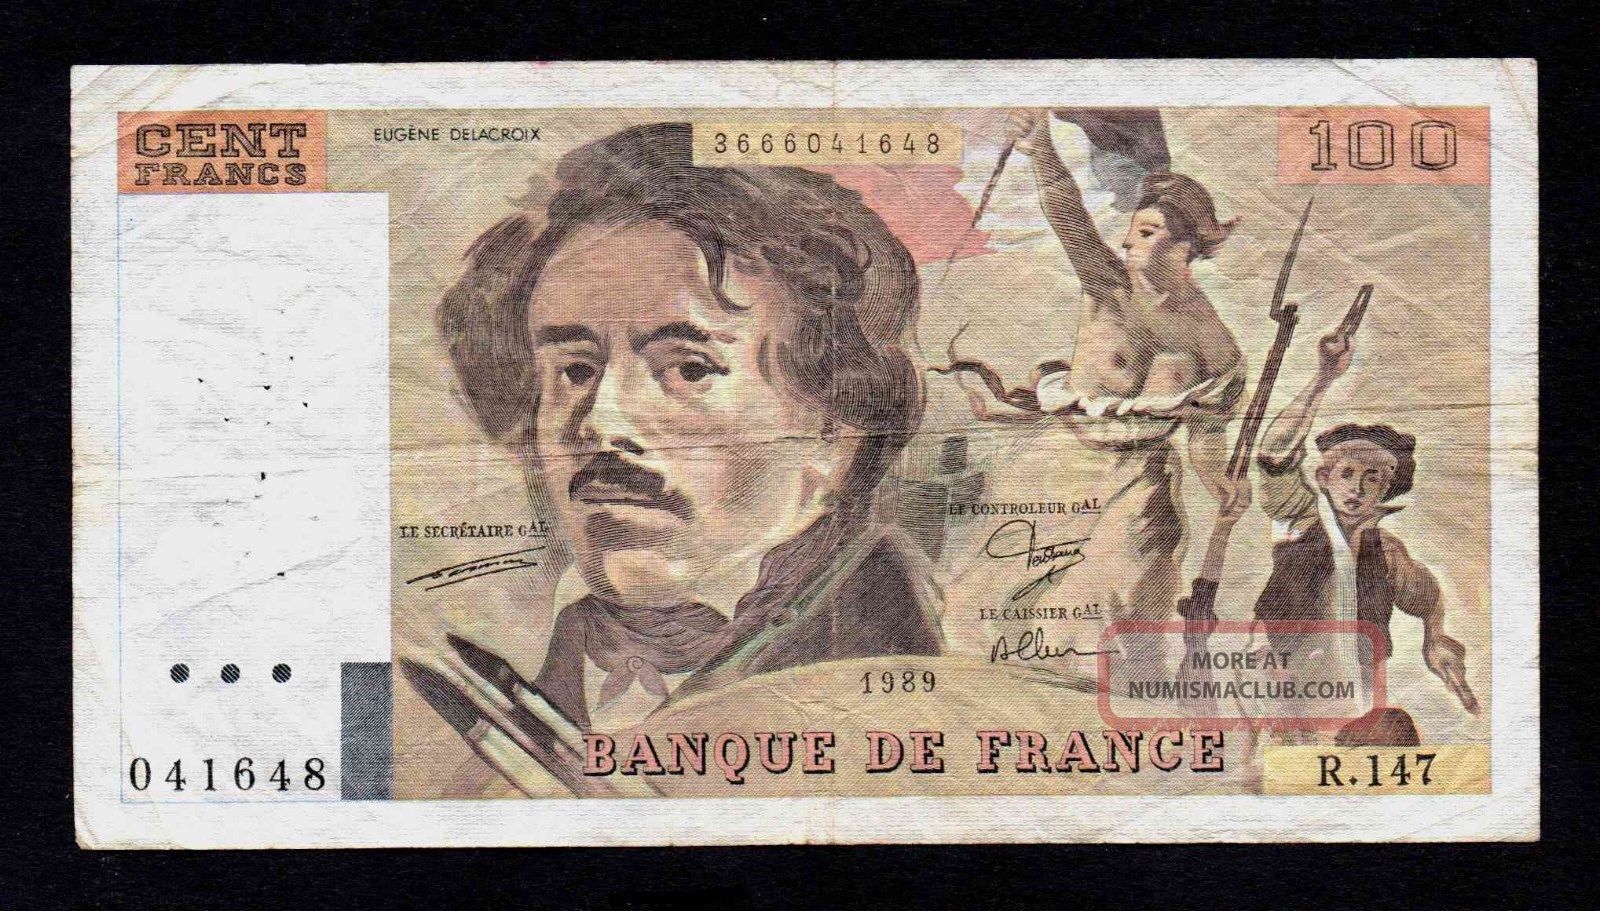 100 Francs 1989 Banque De France Europe photo